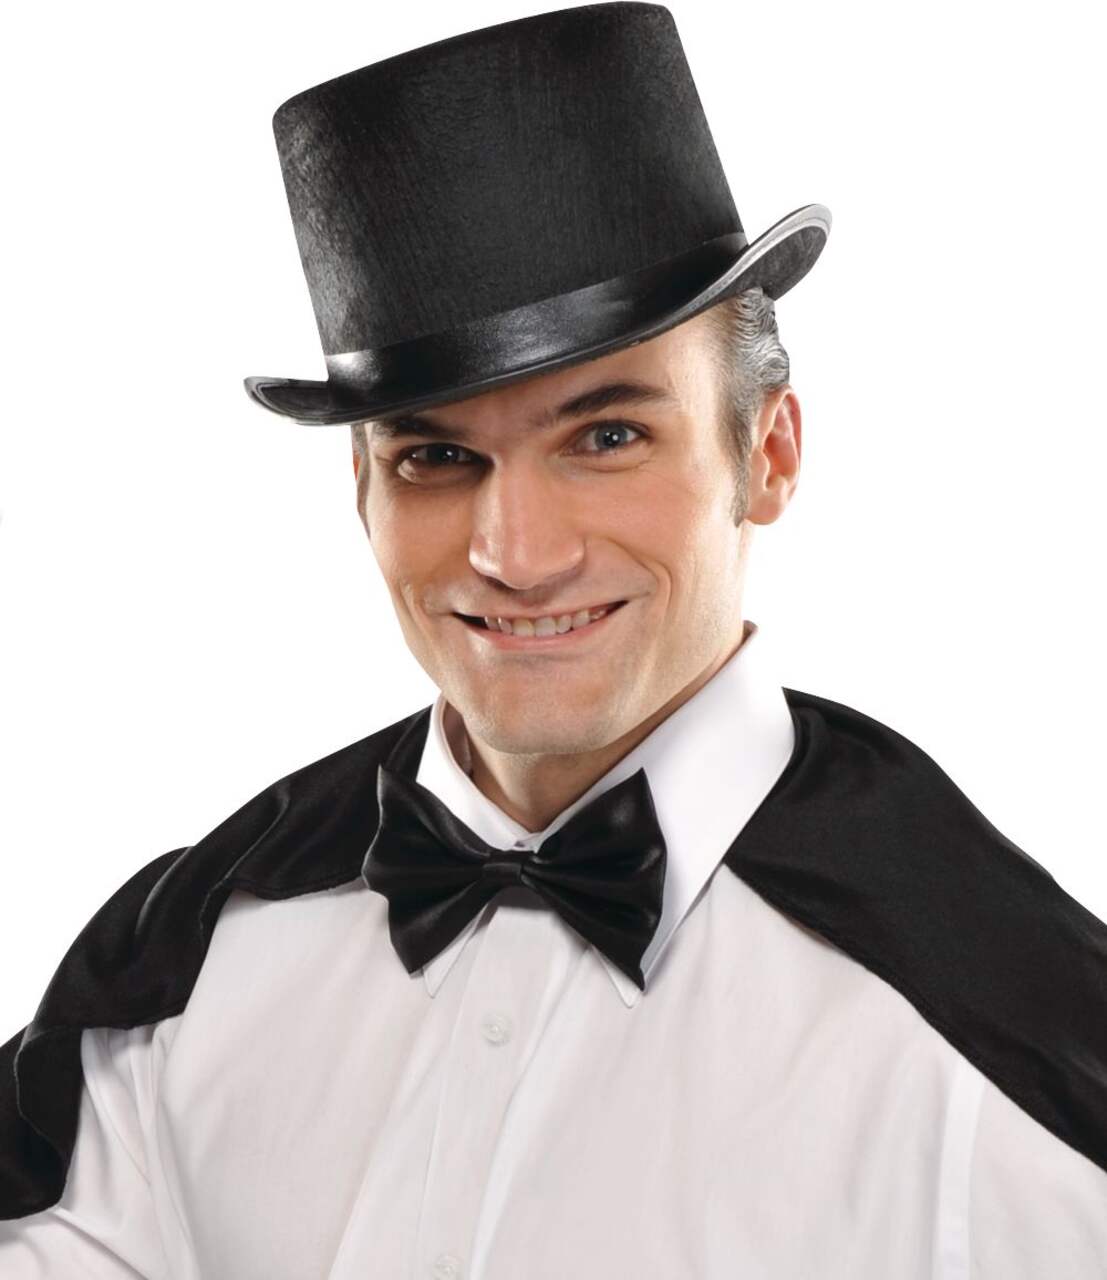 Chapeau Haut-de-forme de Magicien en Feutre Noir pour Adultes - UNBRANDED -  Modèle Magician Stovepipe Top Hat